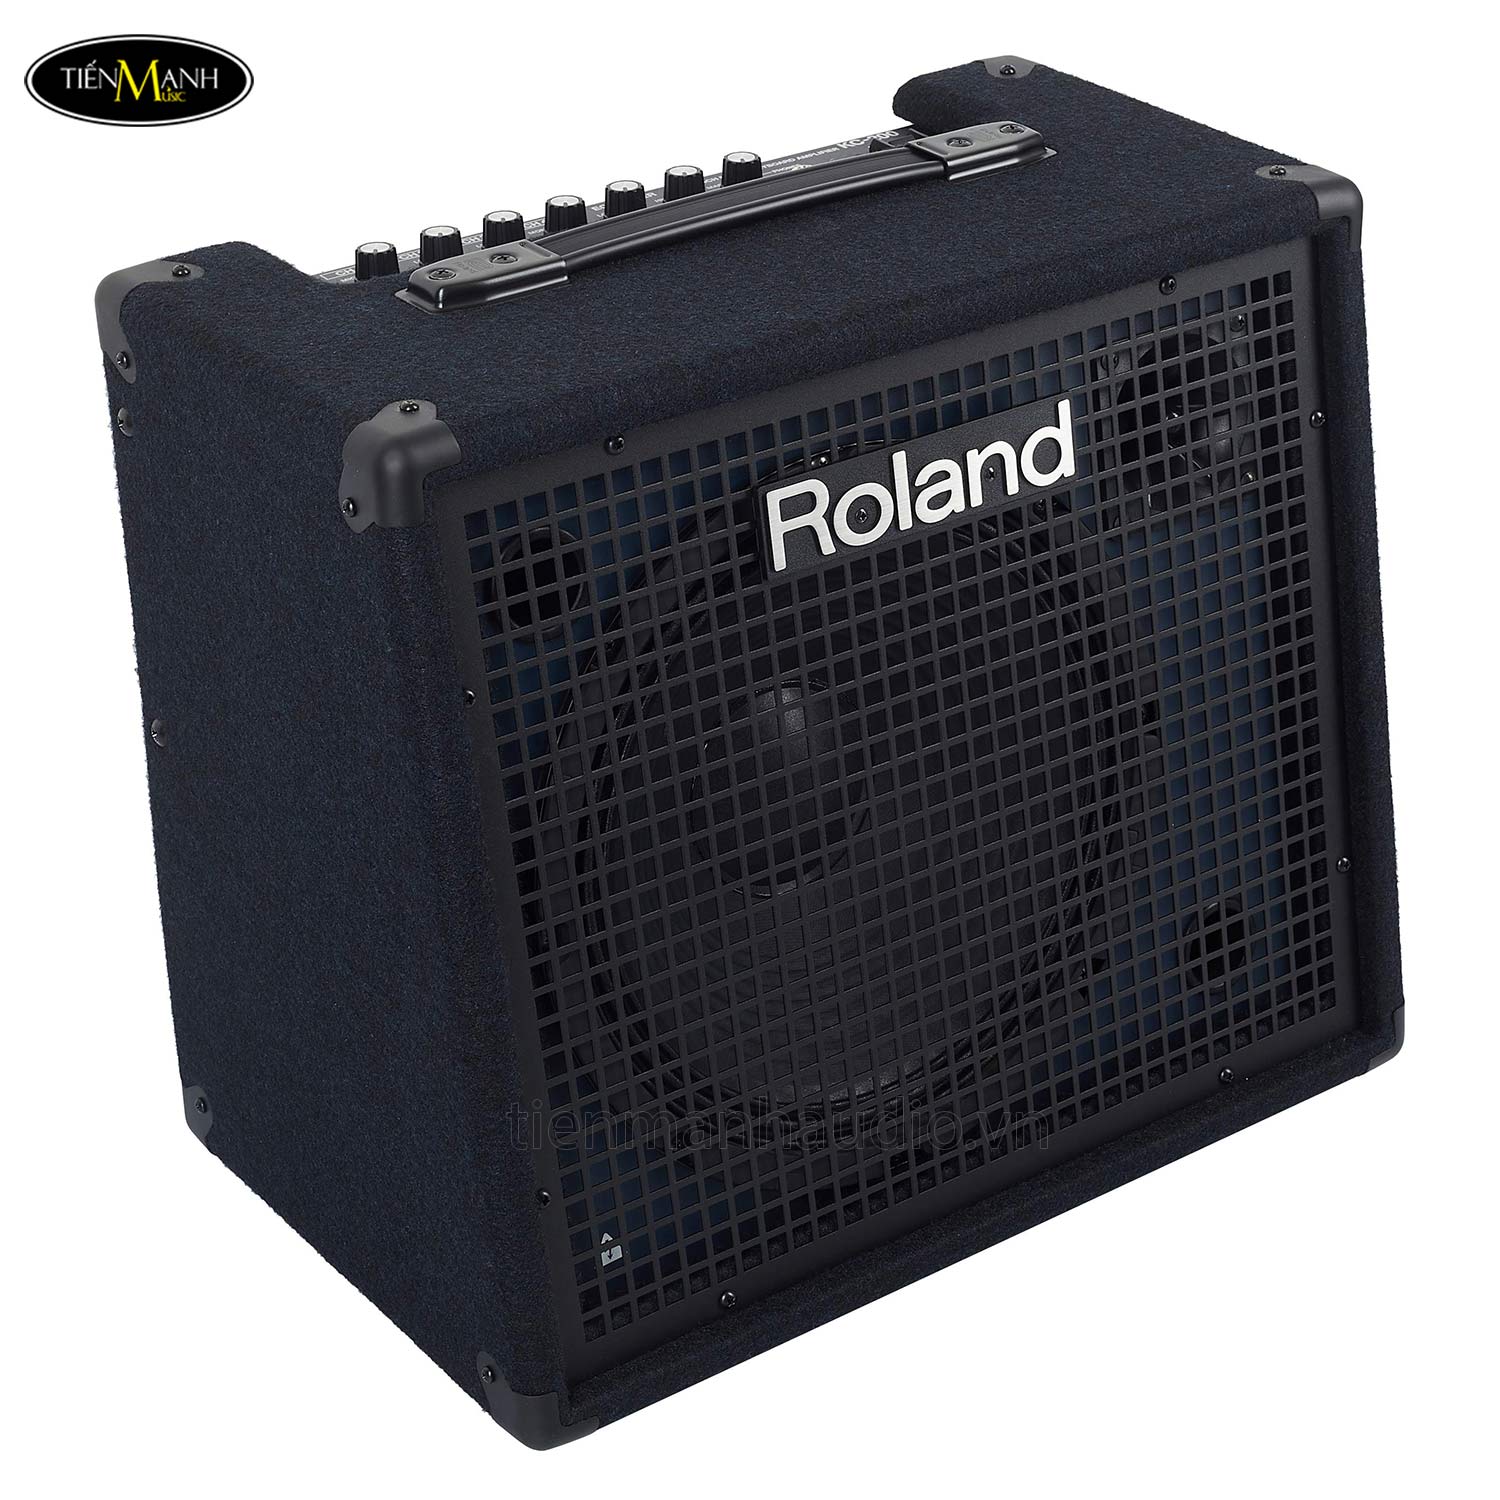 loa-roland-kc-200-amplifier-combo